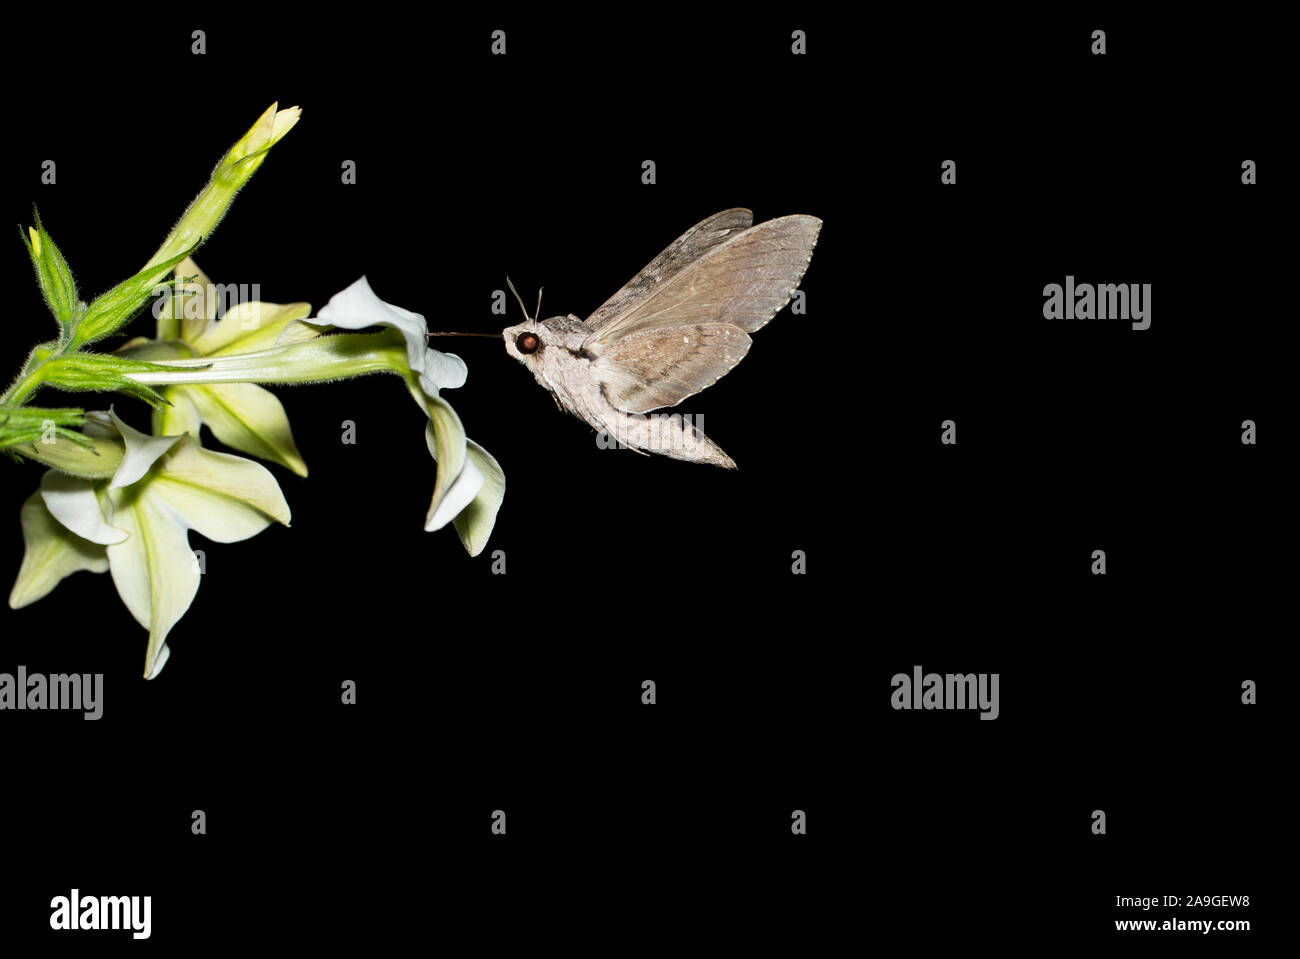 Convolvulus hawk-moth en vol et d'alimentation Banque D'Images